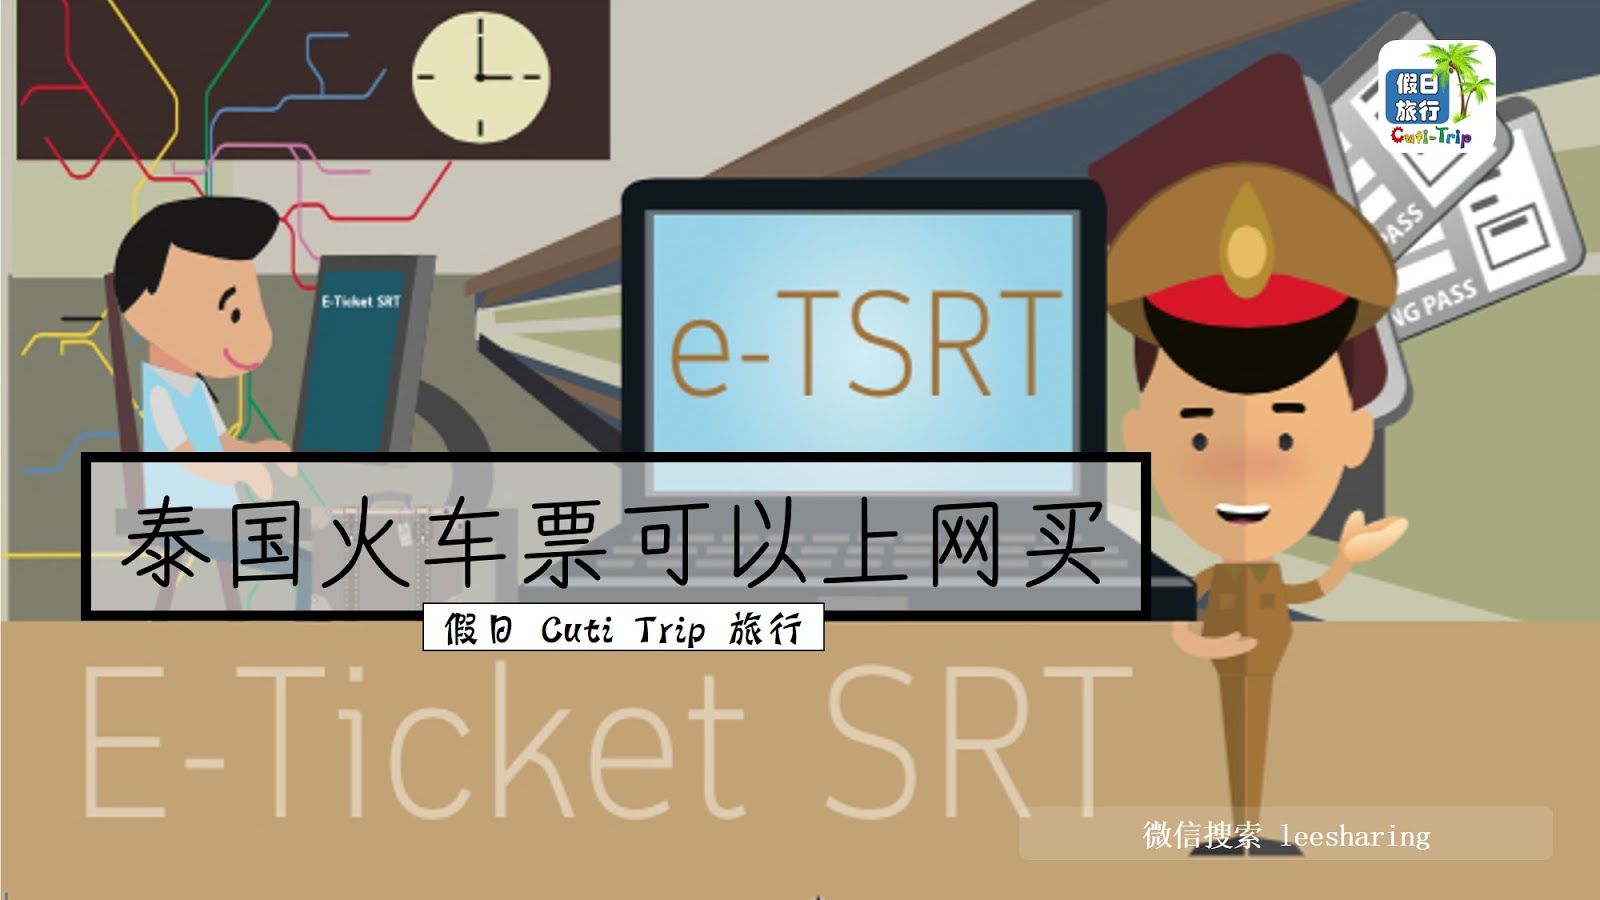 泰国火车票网上订票全攻略（详细中英文对照图文详解） - 马蜂窝